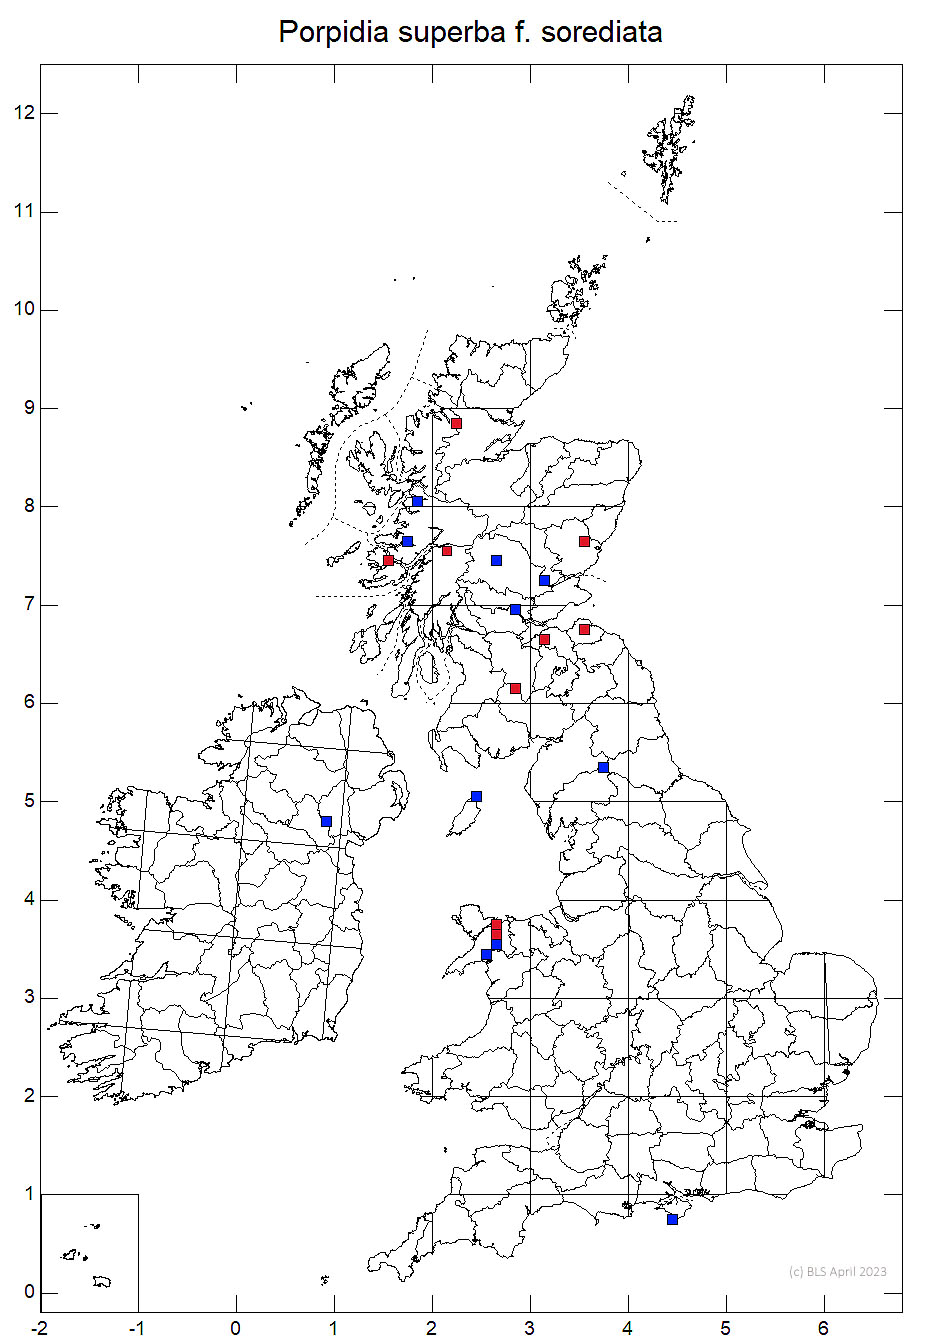 Porpidia superba f. sorediata 10km sq distribution map